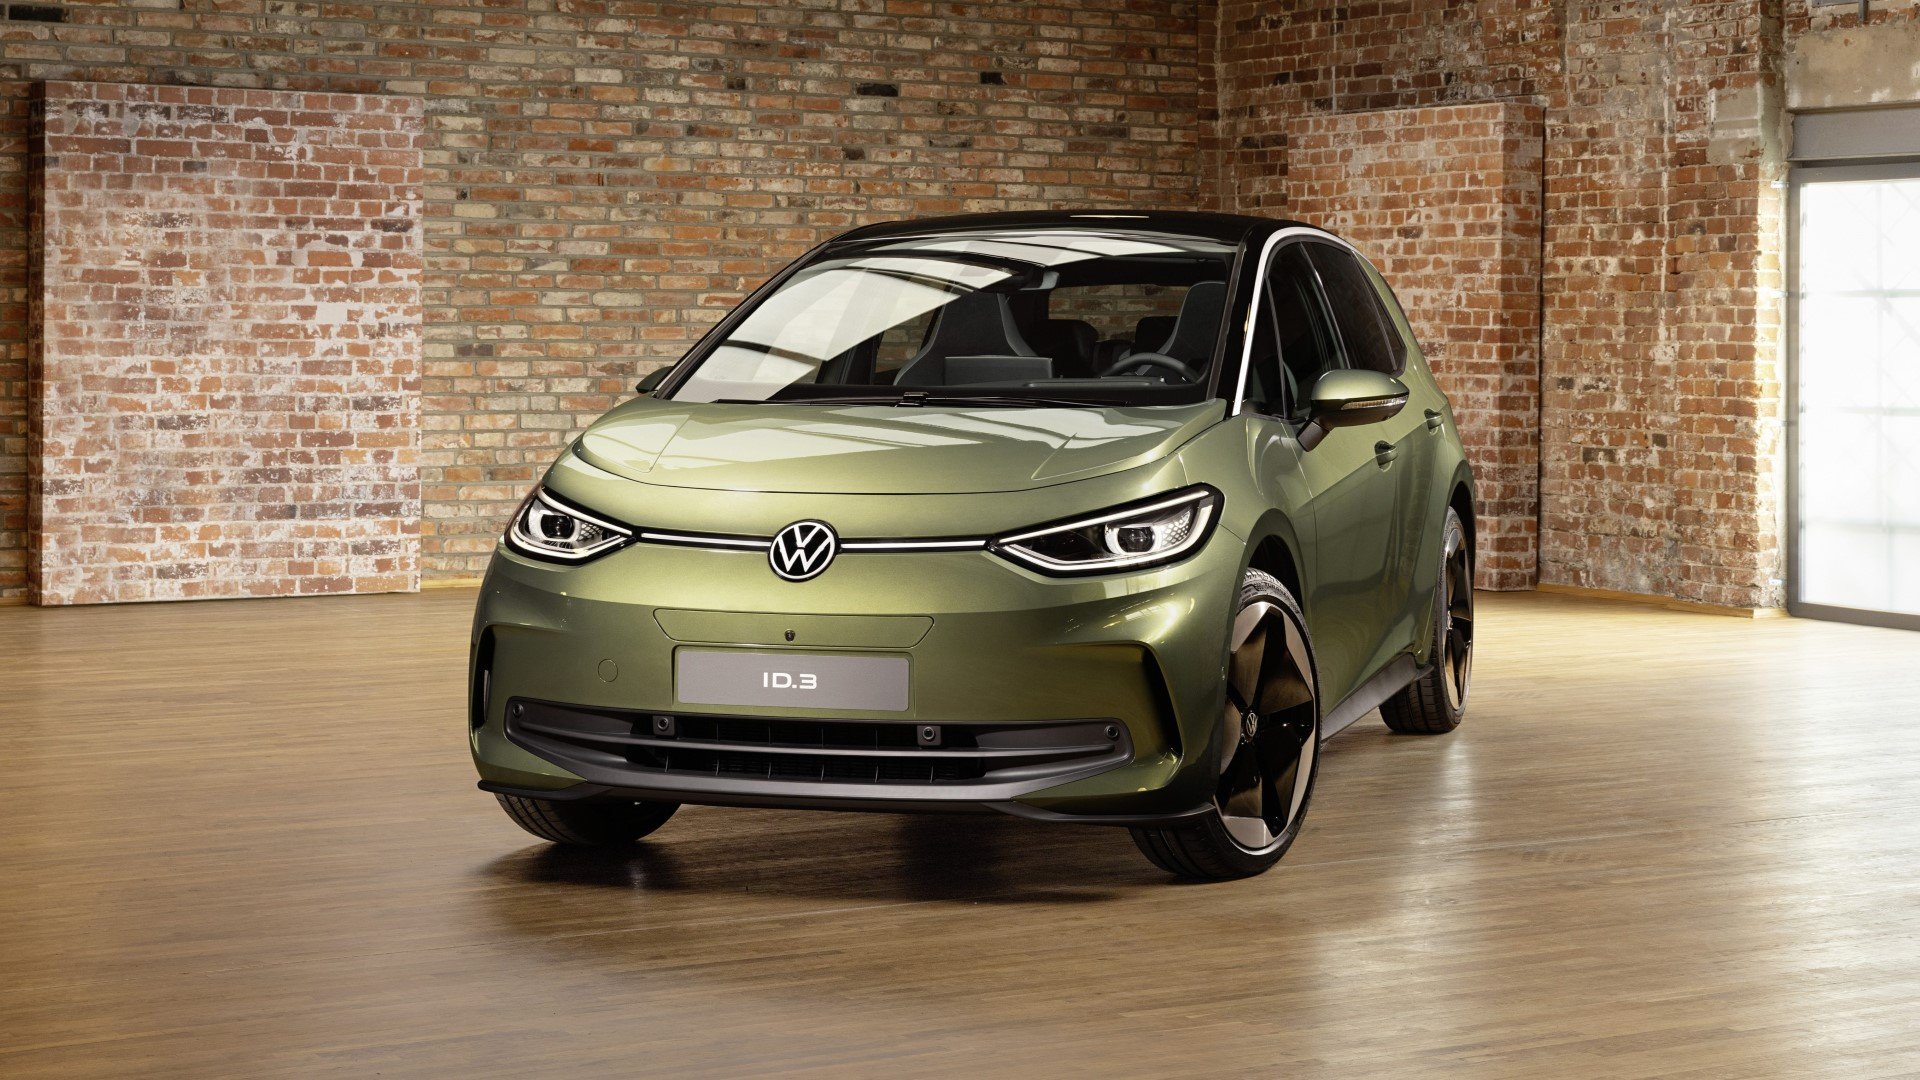 Νέο Volkswagen ID.3: Ουσιαστική βελτίωση στα σημεία